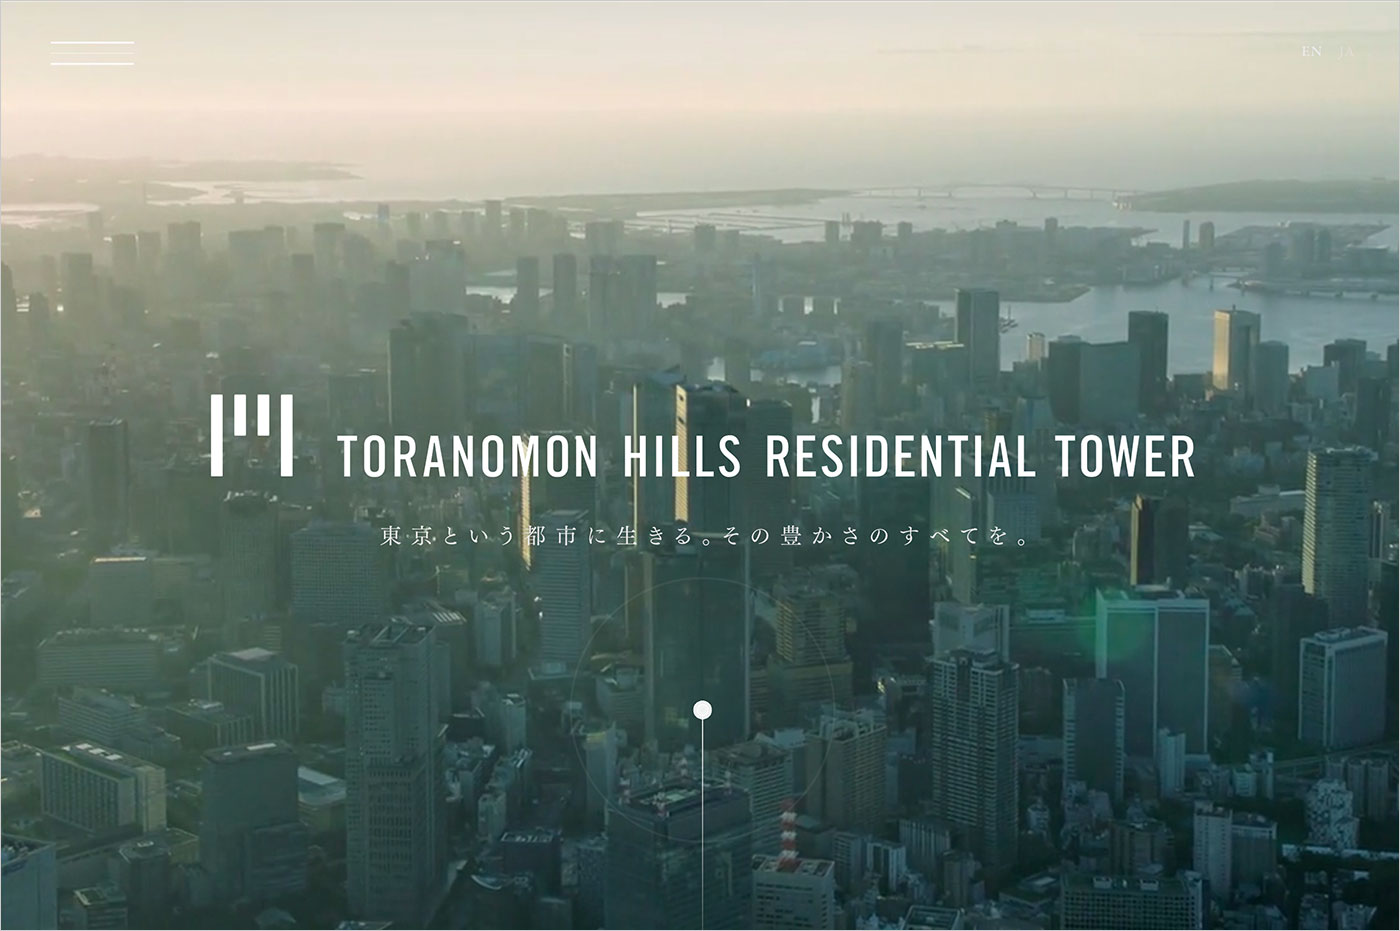 虎ノ門ヒルズ レジデンシャルタワー – TORANOMON HILLS RESIDENTIAL TOWER | 森ビル株式会社ウェブサイトの画面キャプチャ画像